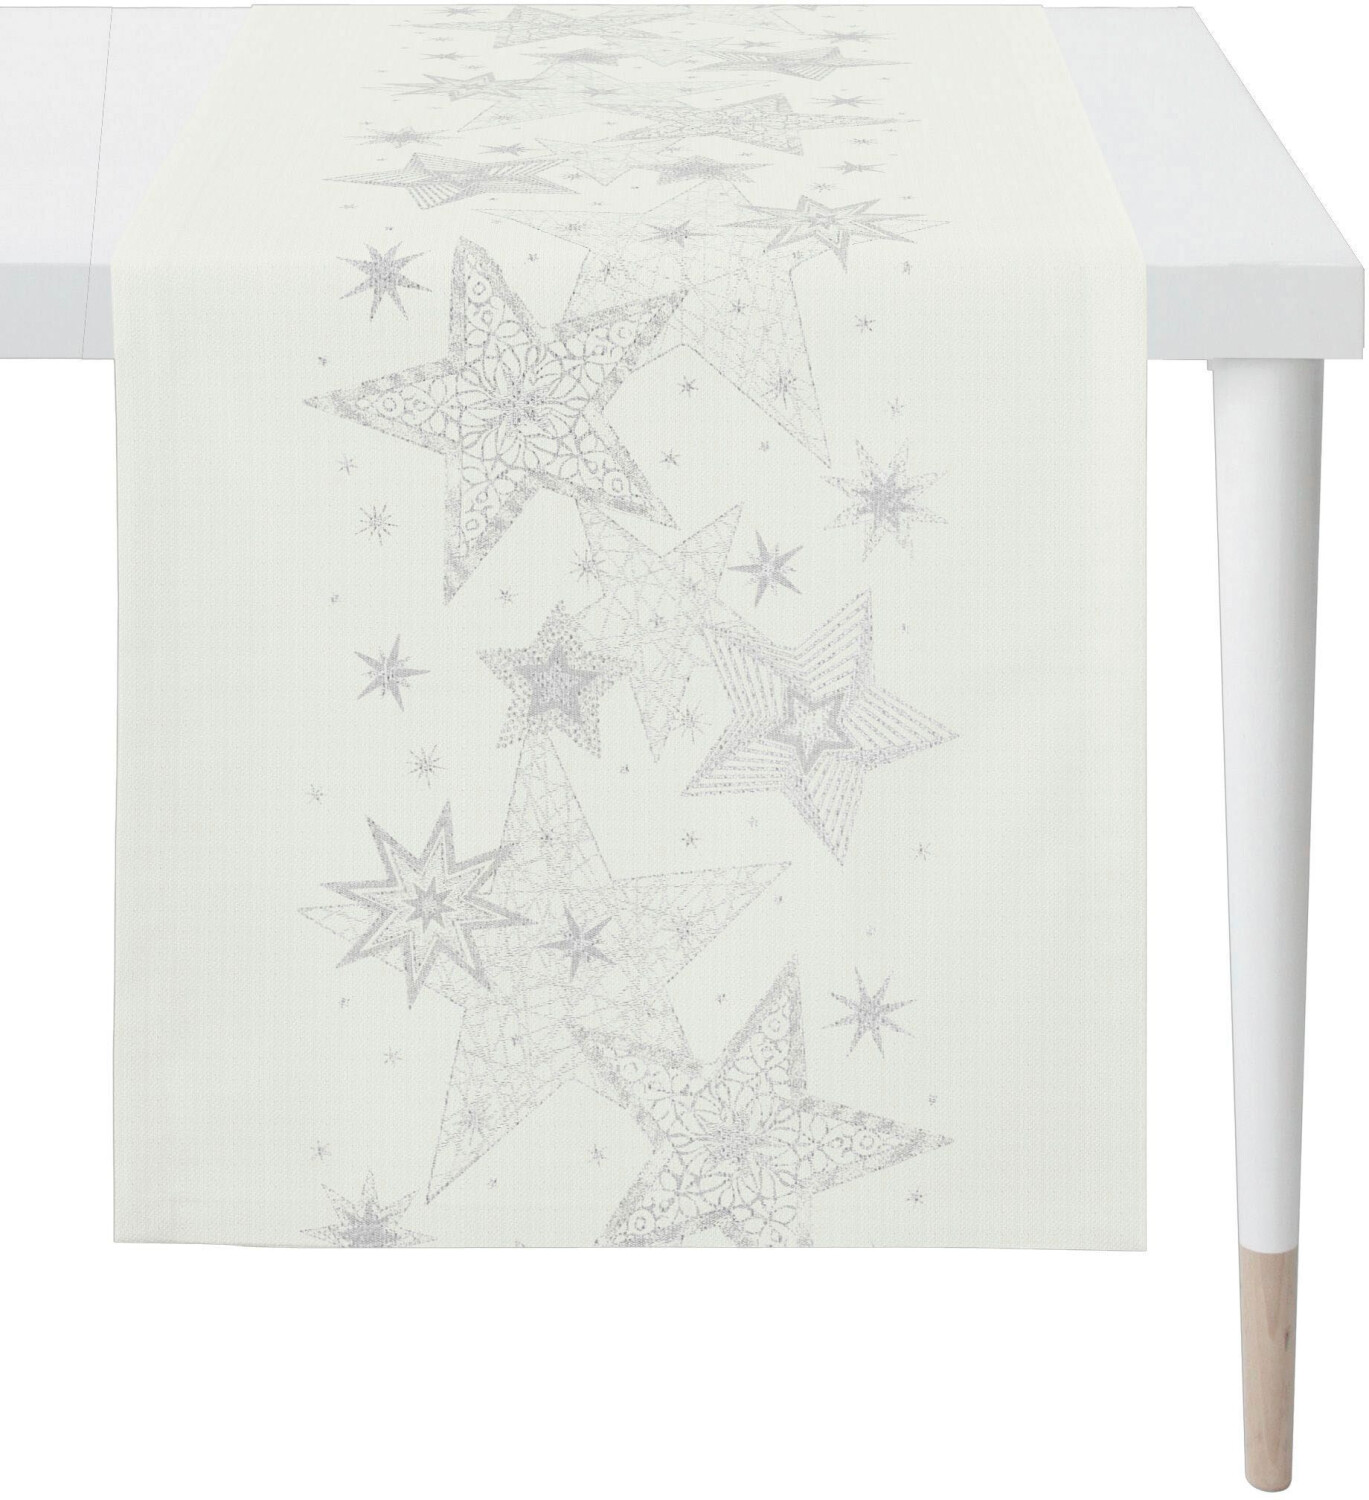 Apelt Tischläufer 6303 CHRISTMAS GLAM 46x135 cm bunt (weiß, silberfarben)  (58547758-0) ab 35,06 € | Preisvergleich bei